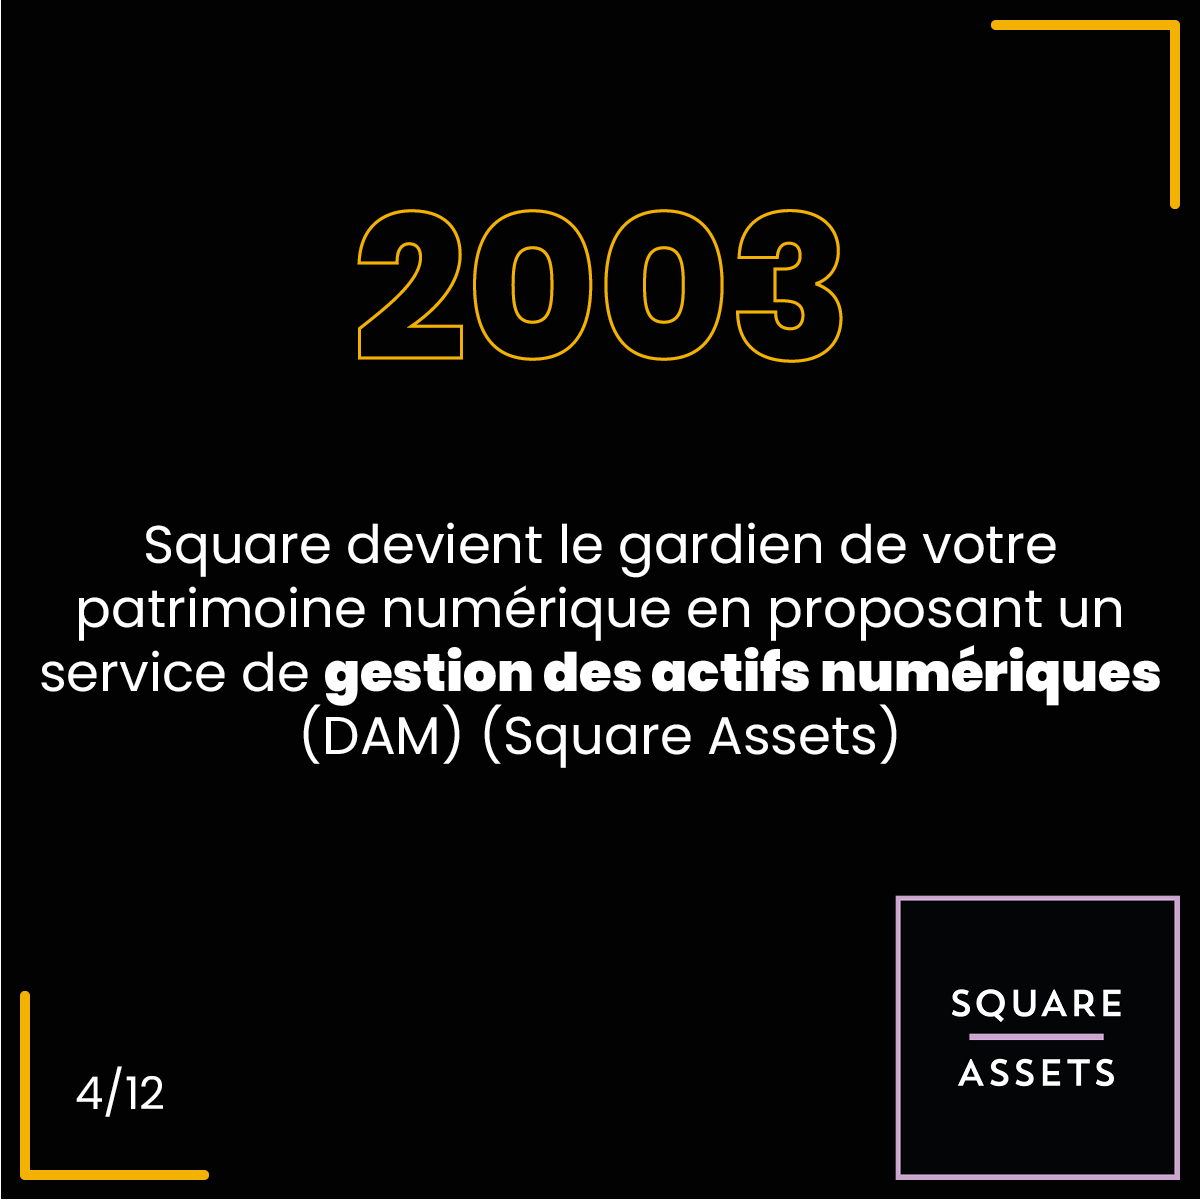 2003, Square devient le gardien de votre patrimoine numérique en proposant un service de gestion des actifs numériques (DAM) (Square Assets)